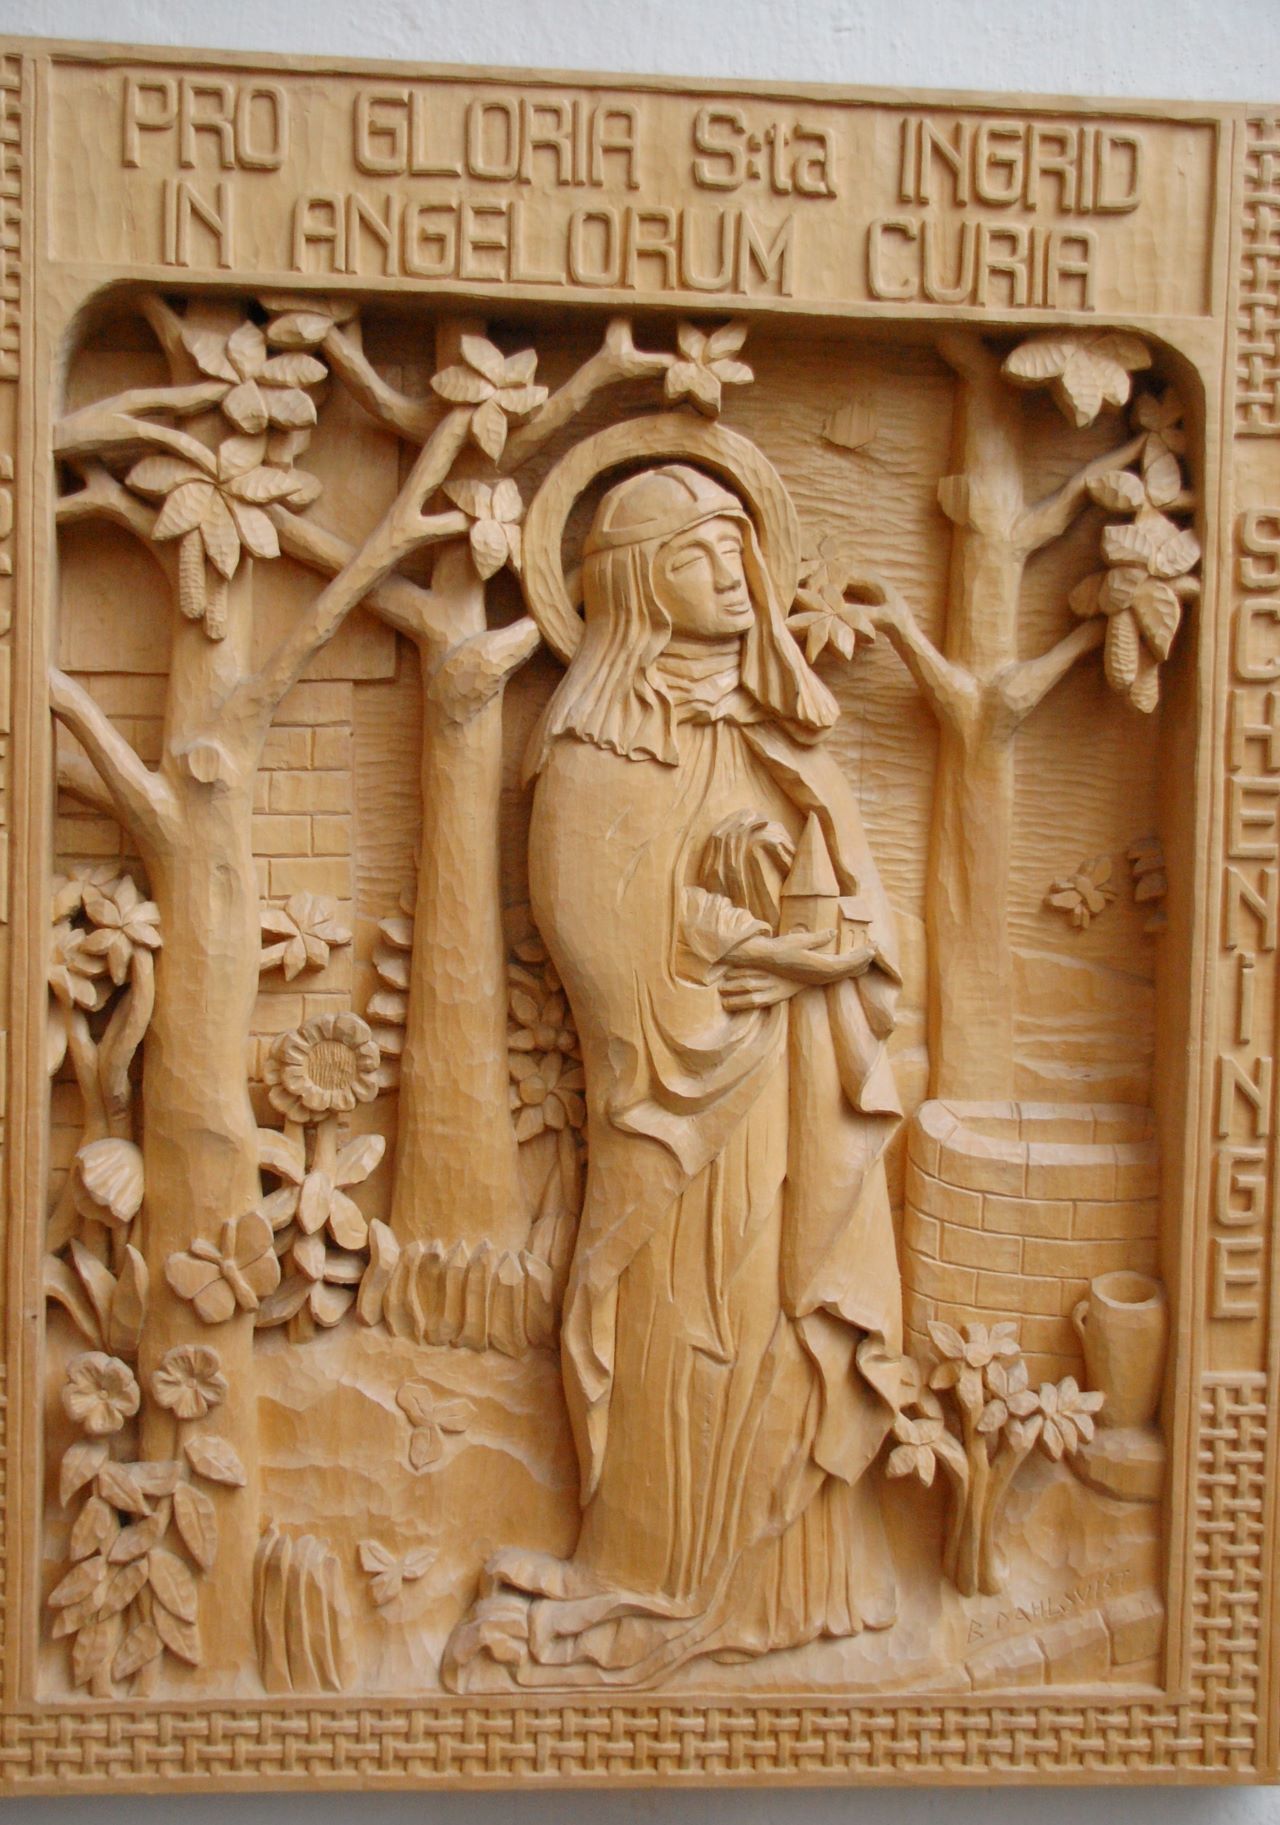 Utskuren relief av S:ta Ingrid. Kvinna med dok på huvudet och håller en kyrka i händerna. Runt omkring finns  utskurna blommor och träd.